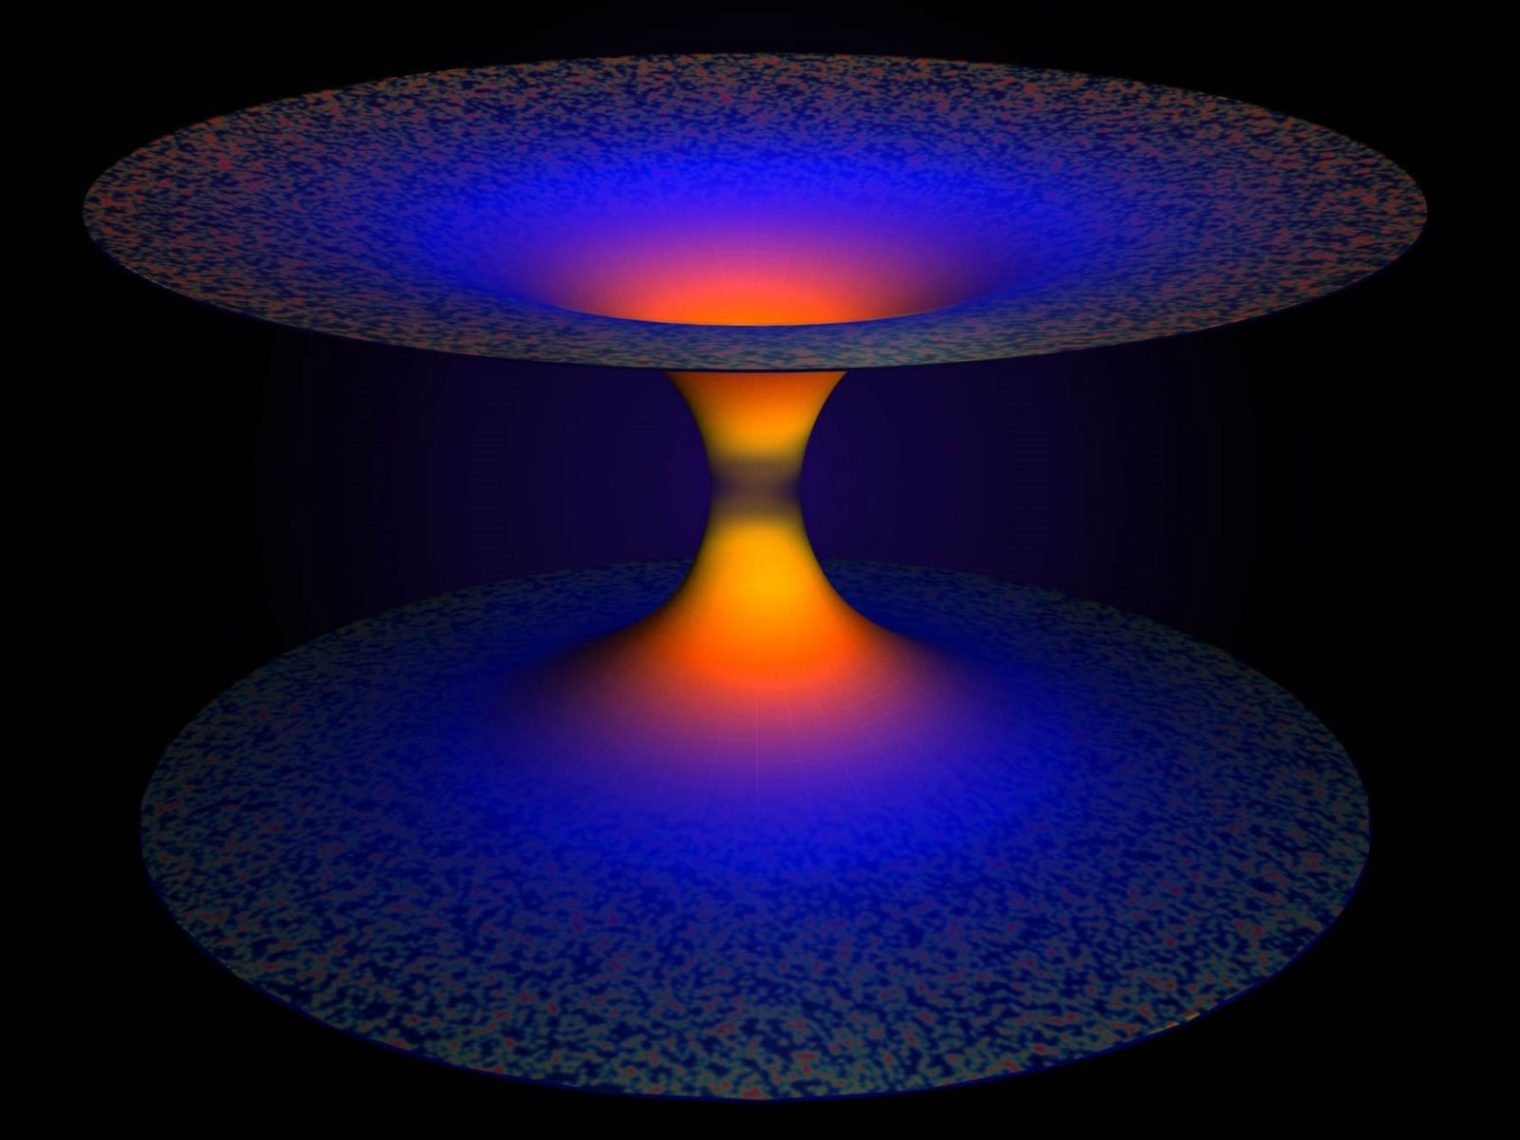 Representación artística de los efectos de gravedad cuántica de bucle en un agujero negro. La mitad inferior de la imagen muestra el agujero negro que, según la relatividad general, atrapa todo, incluida la luz. La gravedad cuántica de bucles, una teoría que extiende la relatividad general de Einstein utilizando la mecánica cuántica, supera este tremendo impulso y libera todo lo que se muestra en la mitad superior de la imagen, resolviendo así el problema fundamental de la singularidad del agujero negro. Crédito: A. Corichi y JP Ruiz. LSU.